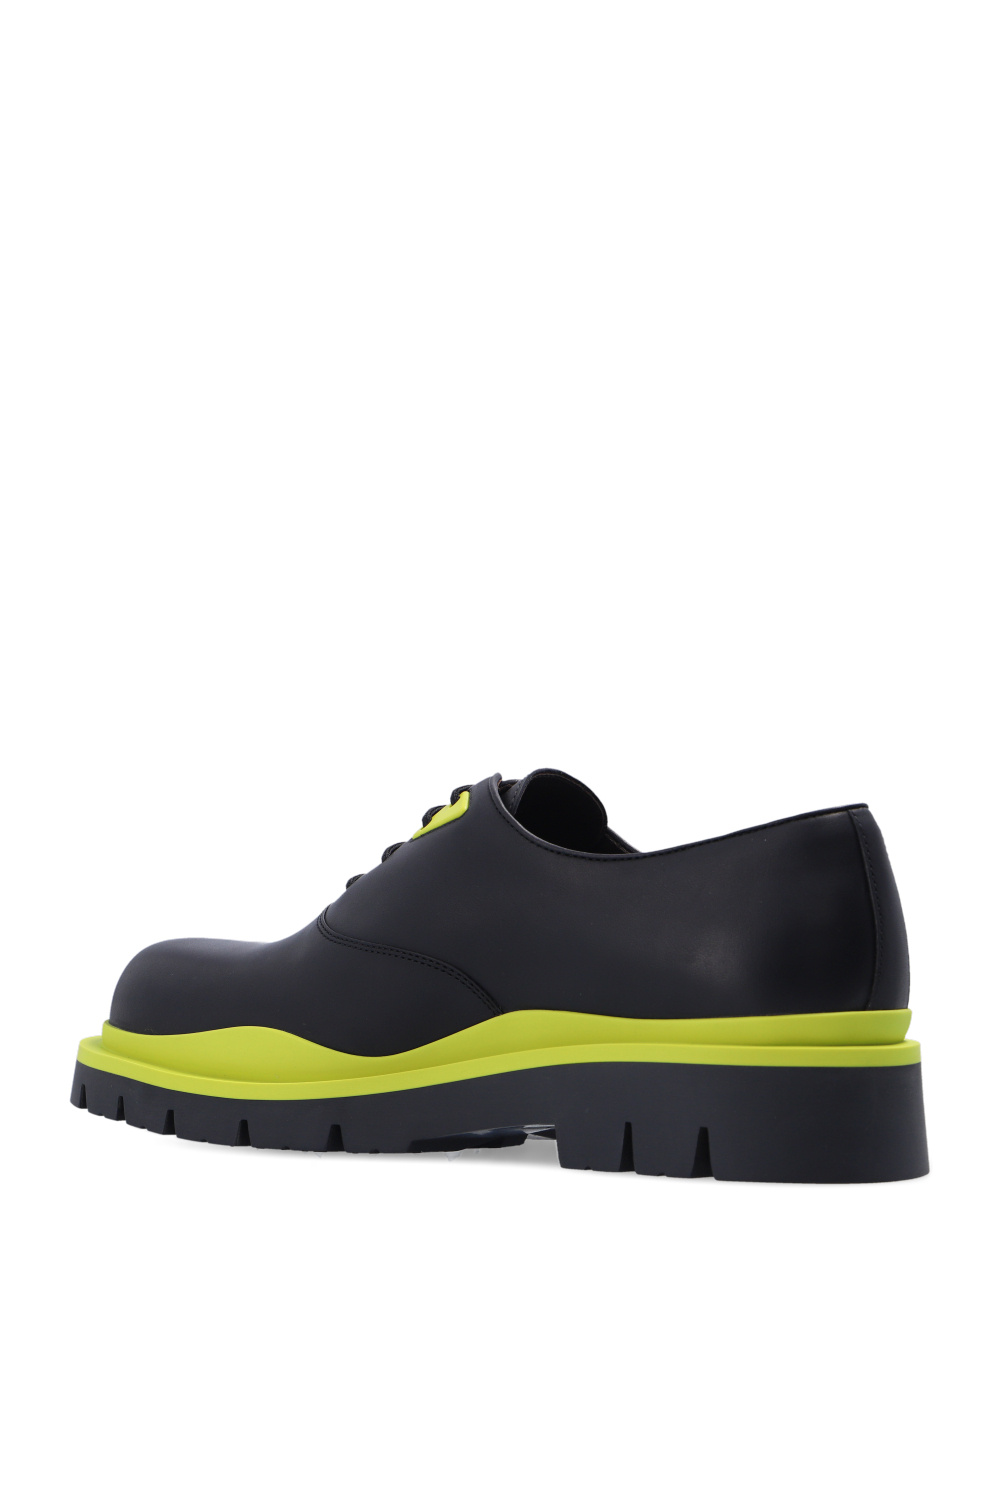 Bottega Veneta ‘Tire’ leather Jacquemus shoes